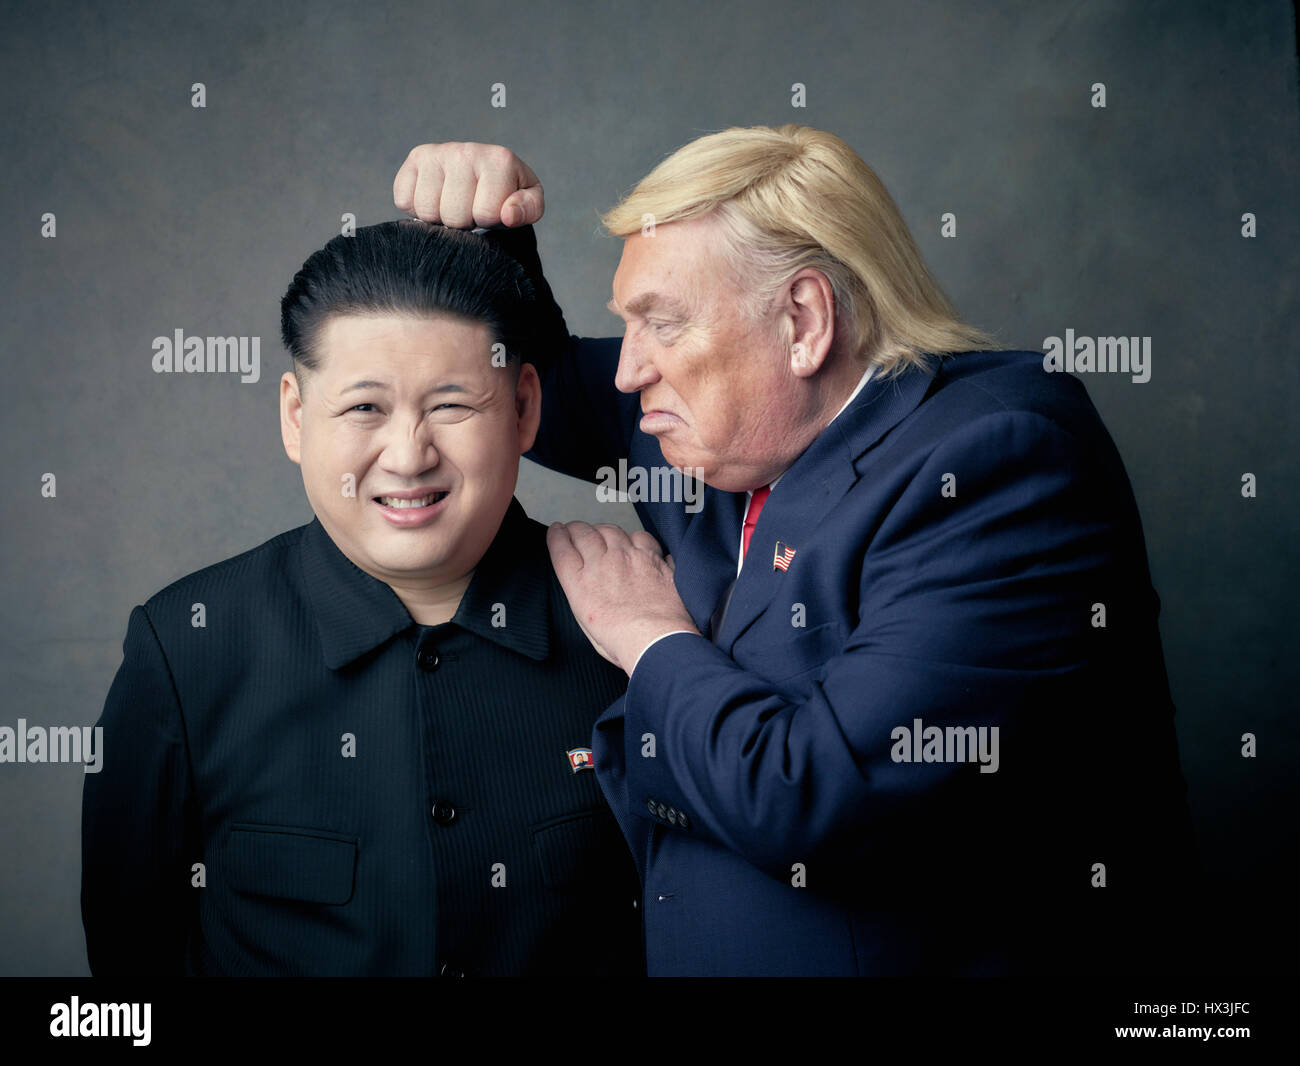 Le président Donald Trump et sosie dirigeant suprême de la Corée du Nord Kim Jong-Un shoot portrait sosie. Une histoire d'amour improbable de deux dictateurs. Banque D'Images